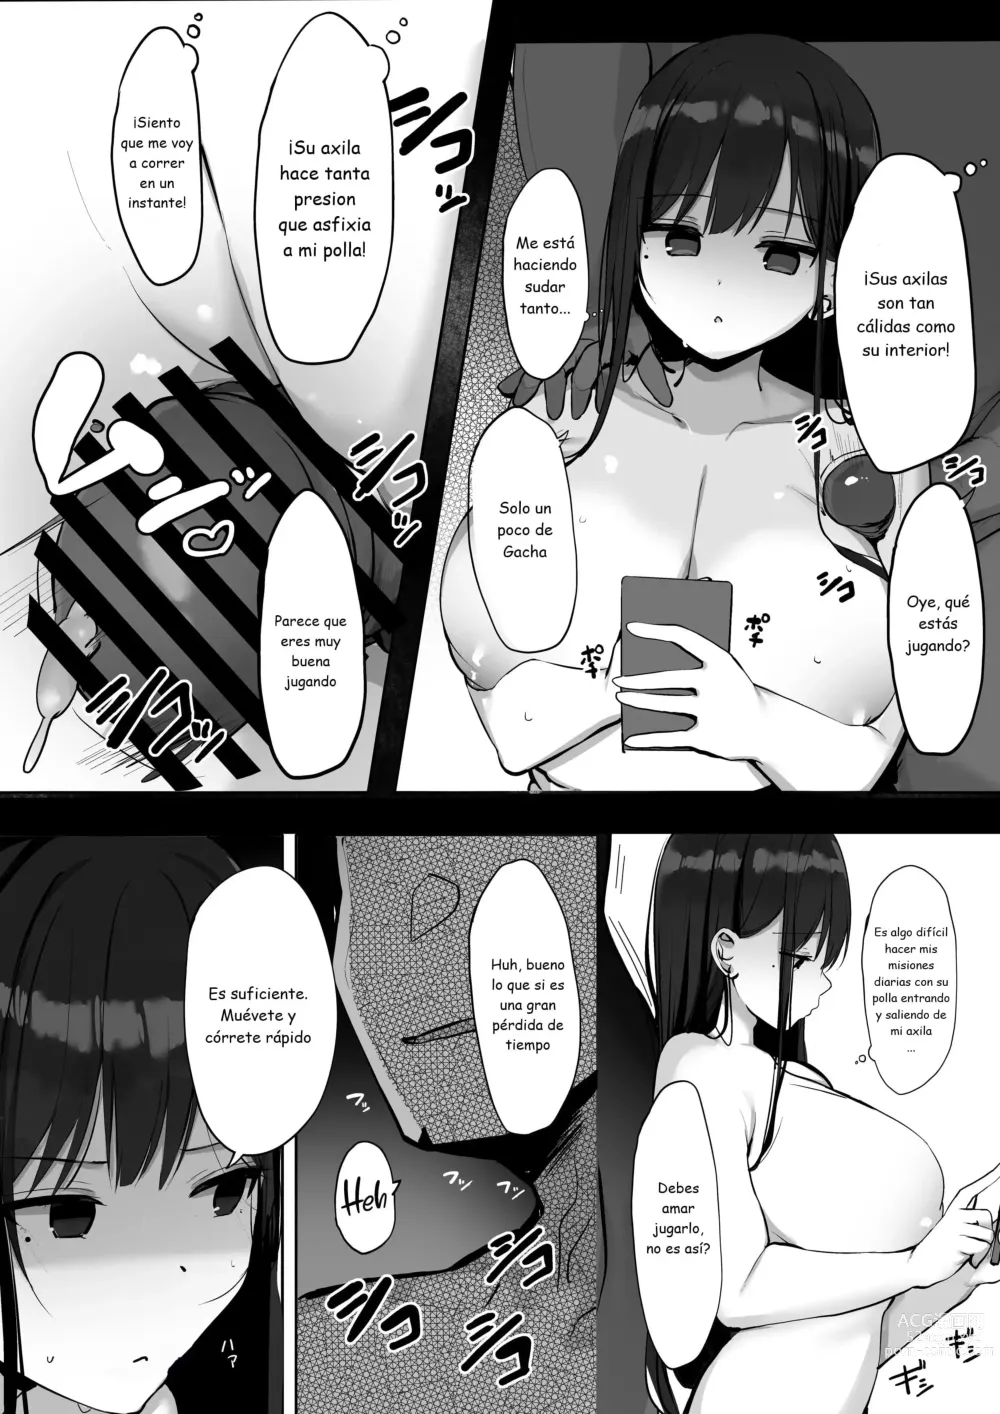 Page 20 of doujinshi Hey, donde está el condón?